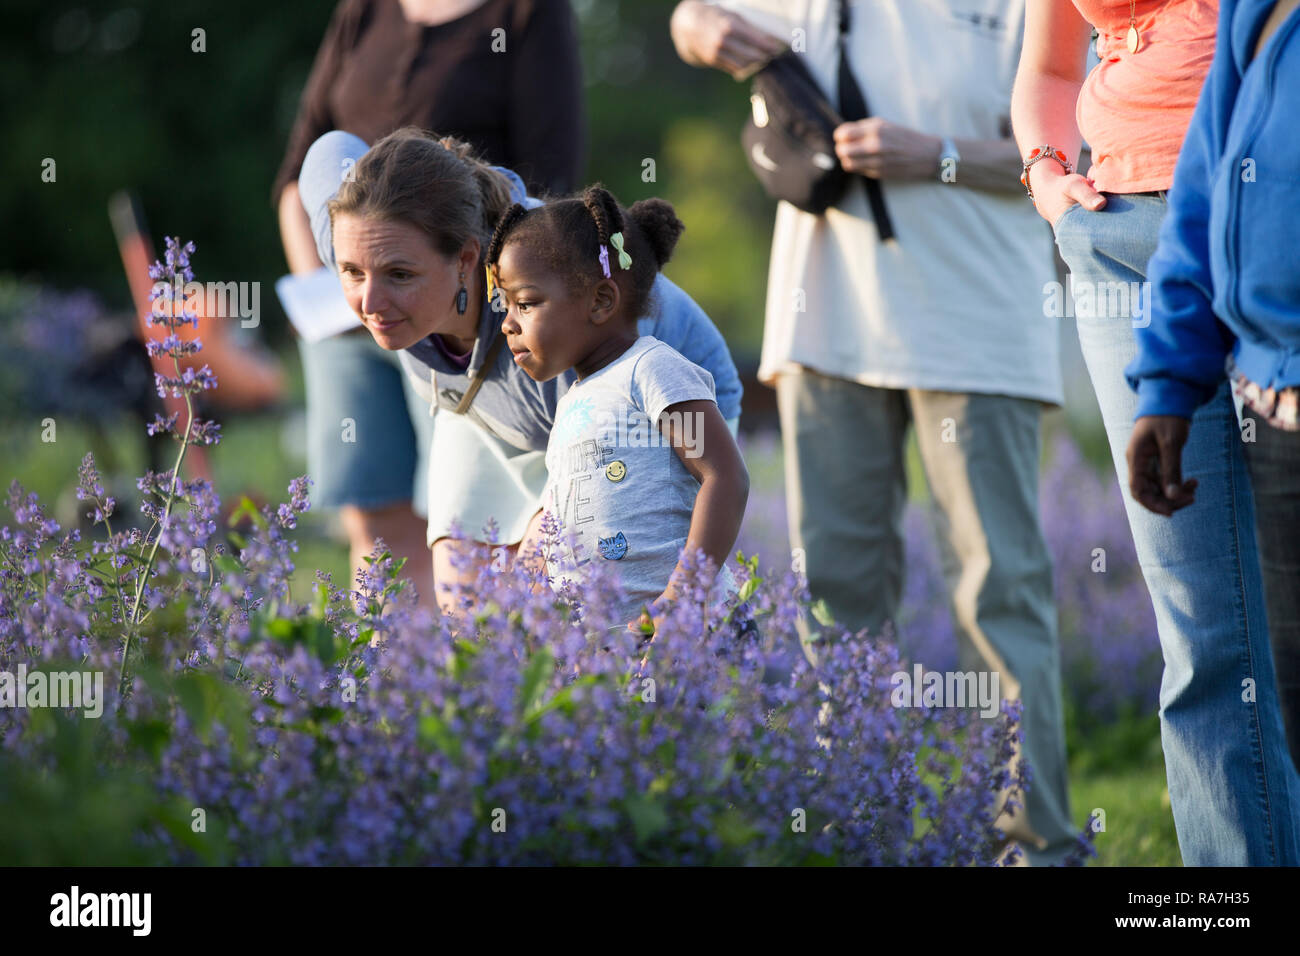 Eine Frau mittleren Alters beugt sich über etwas mit einem jungen Mädchen in einer Gemeinschaft Blumengarten zu sehen Stockfoto